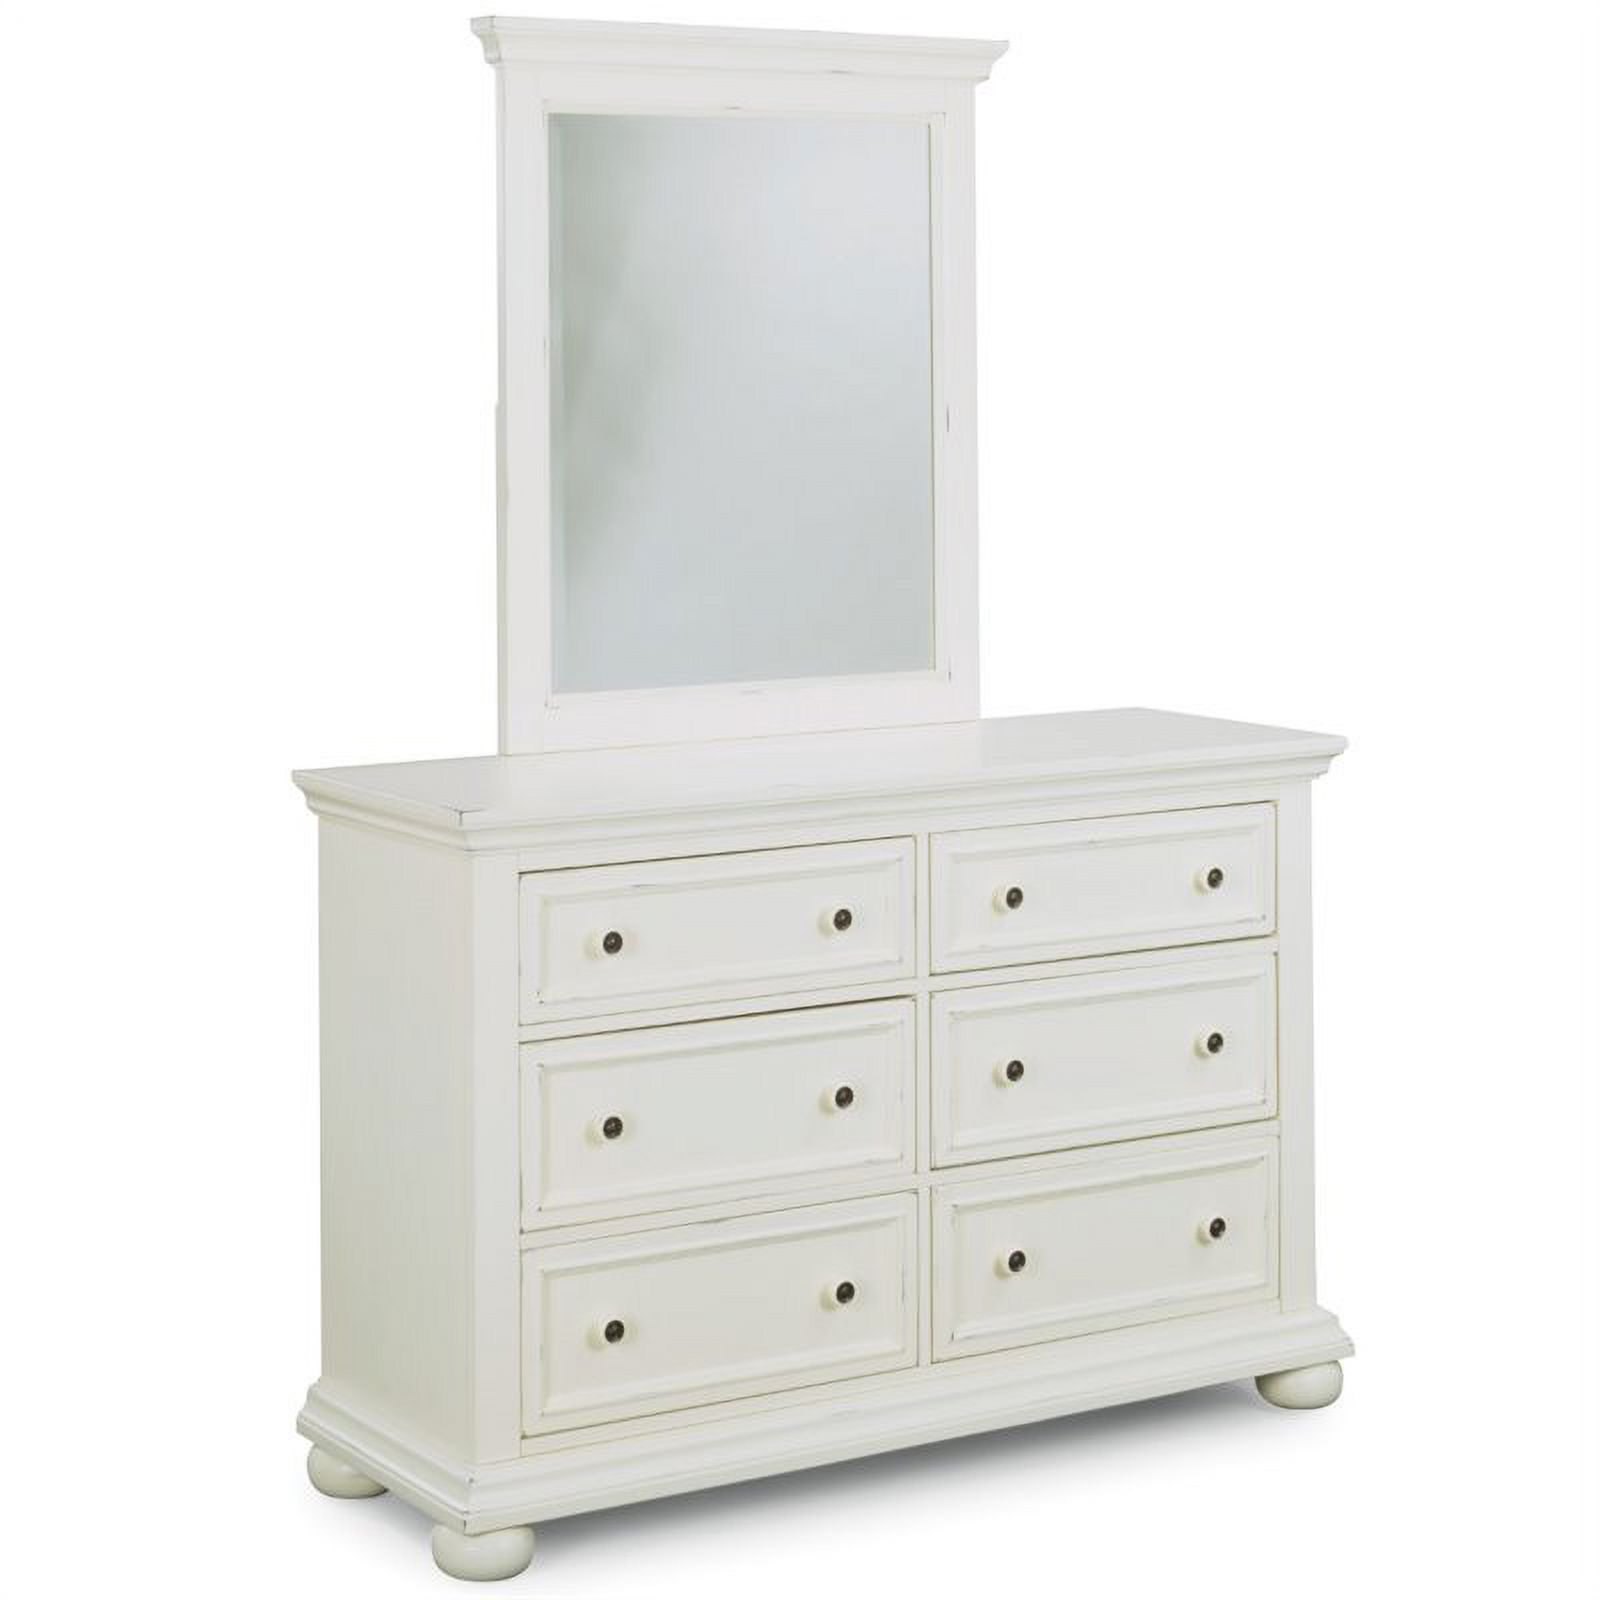 Dover White Queen Bed, Nightstand, Dresser & Mirror Bedroom Set - image 4 of 4